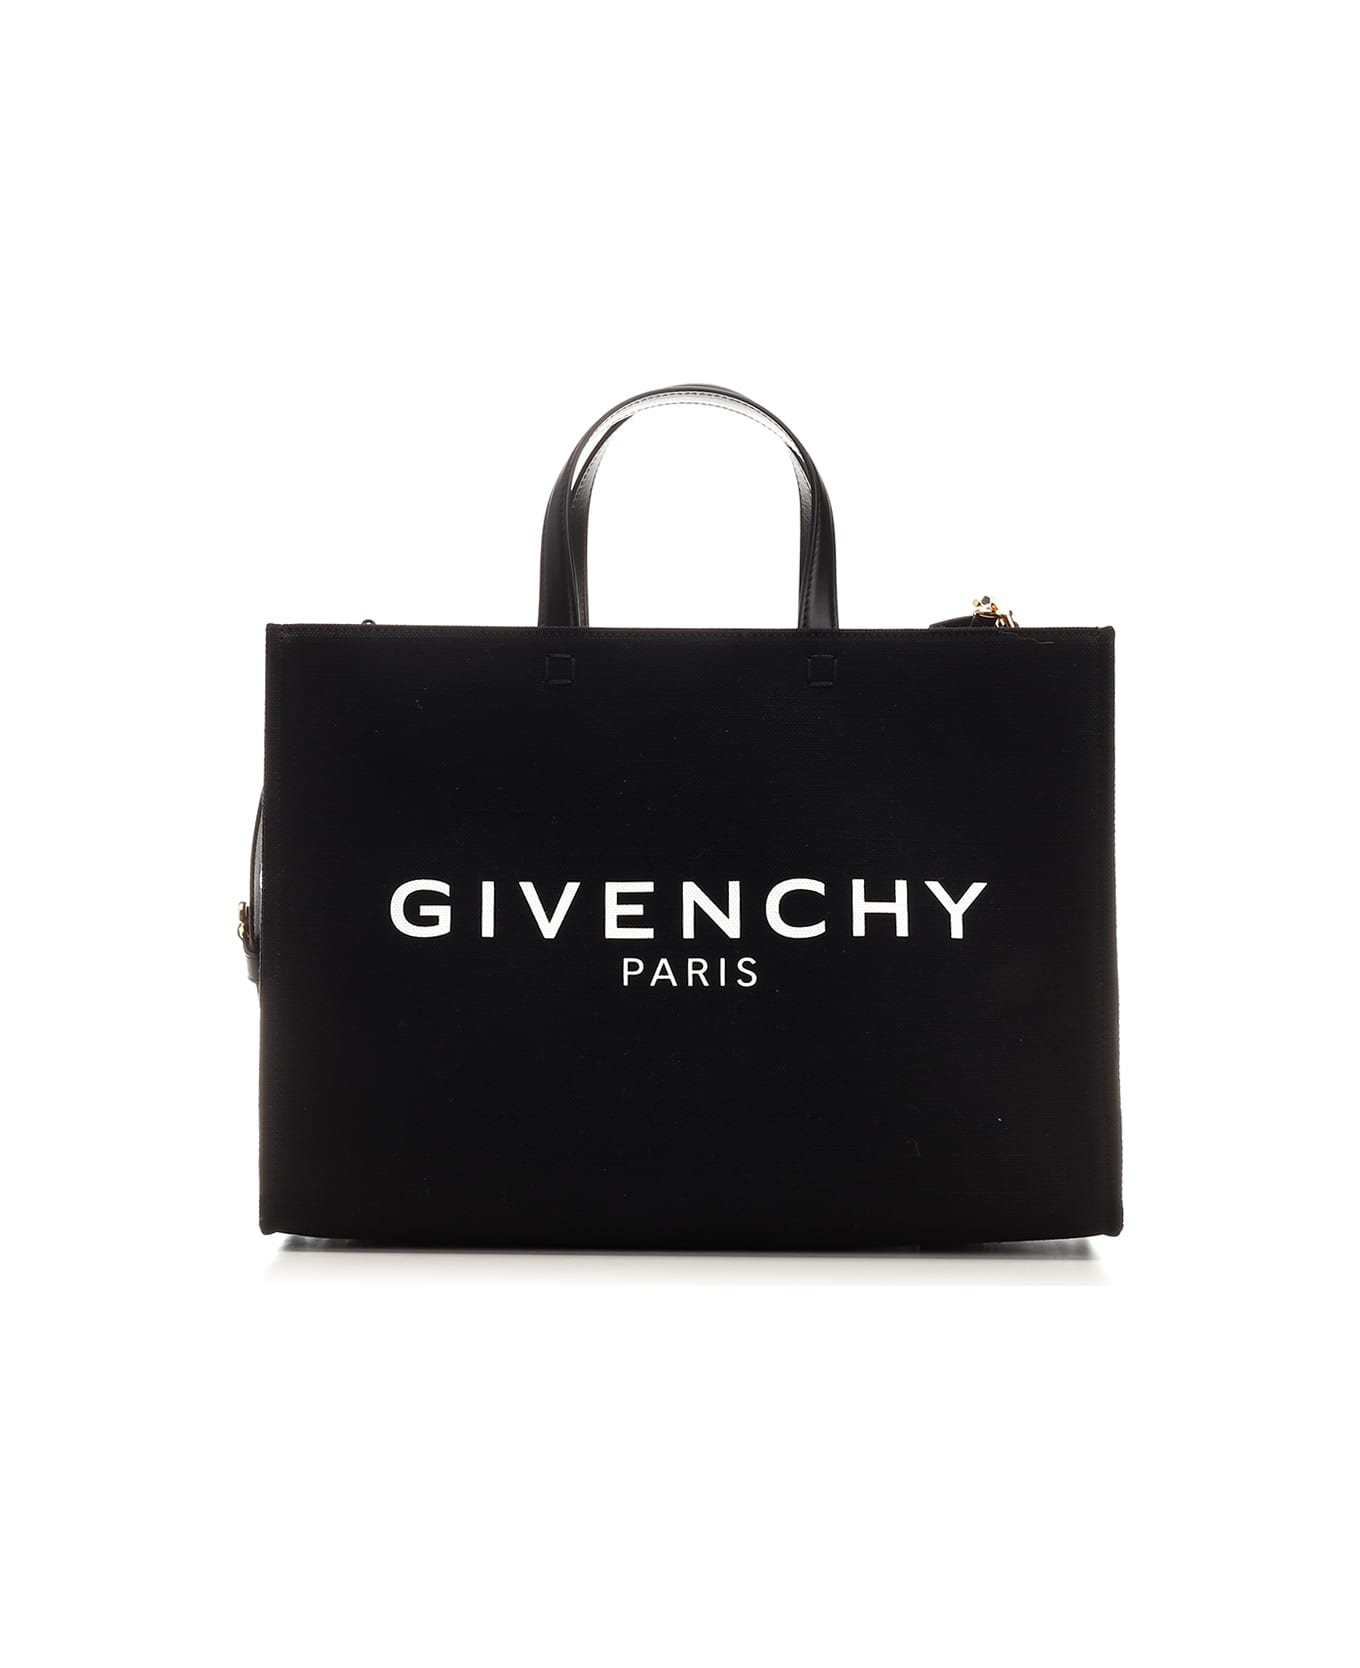 Givenchy 'g' Medium Tote - Black